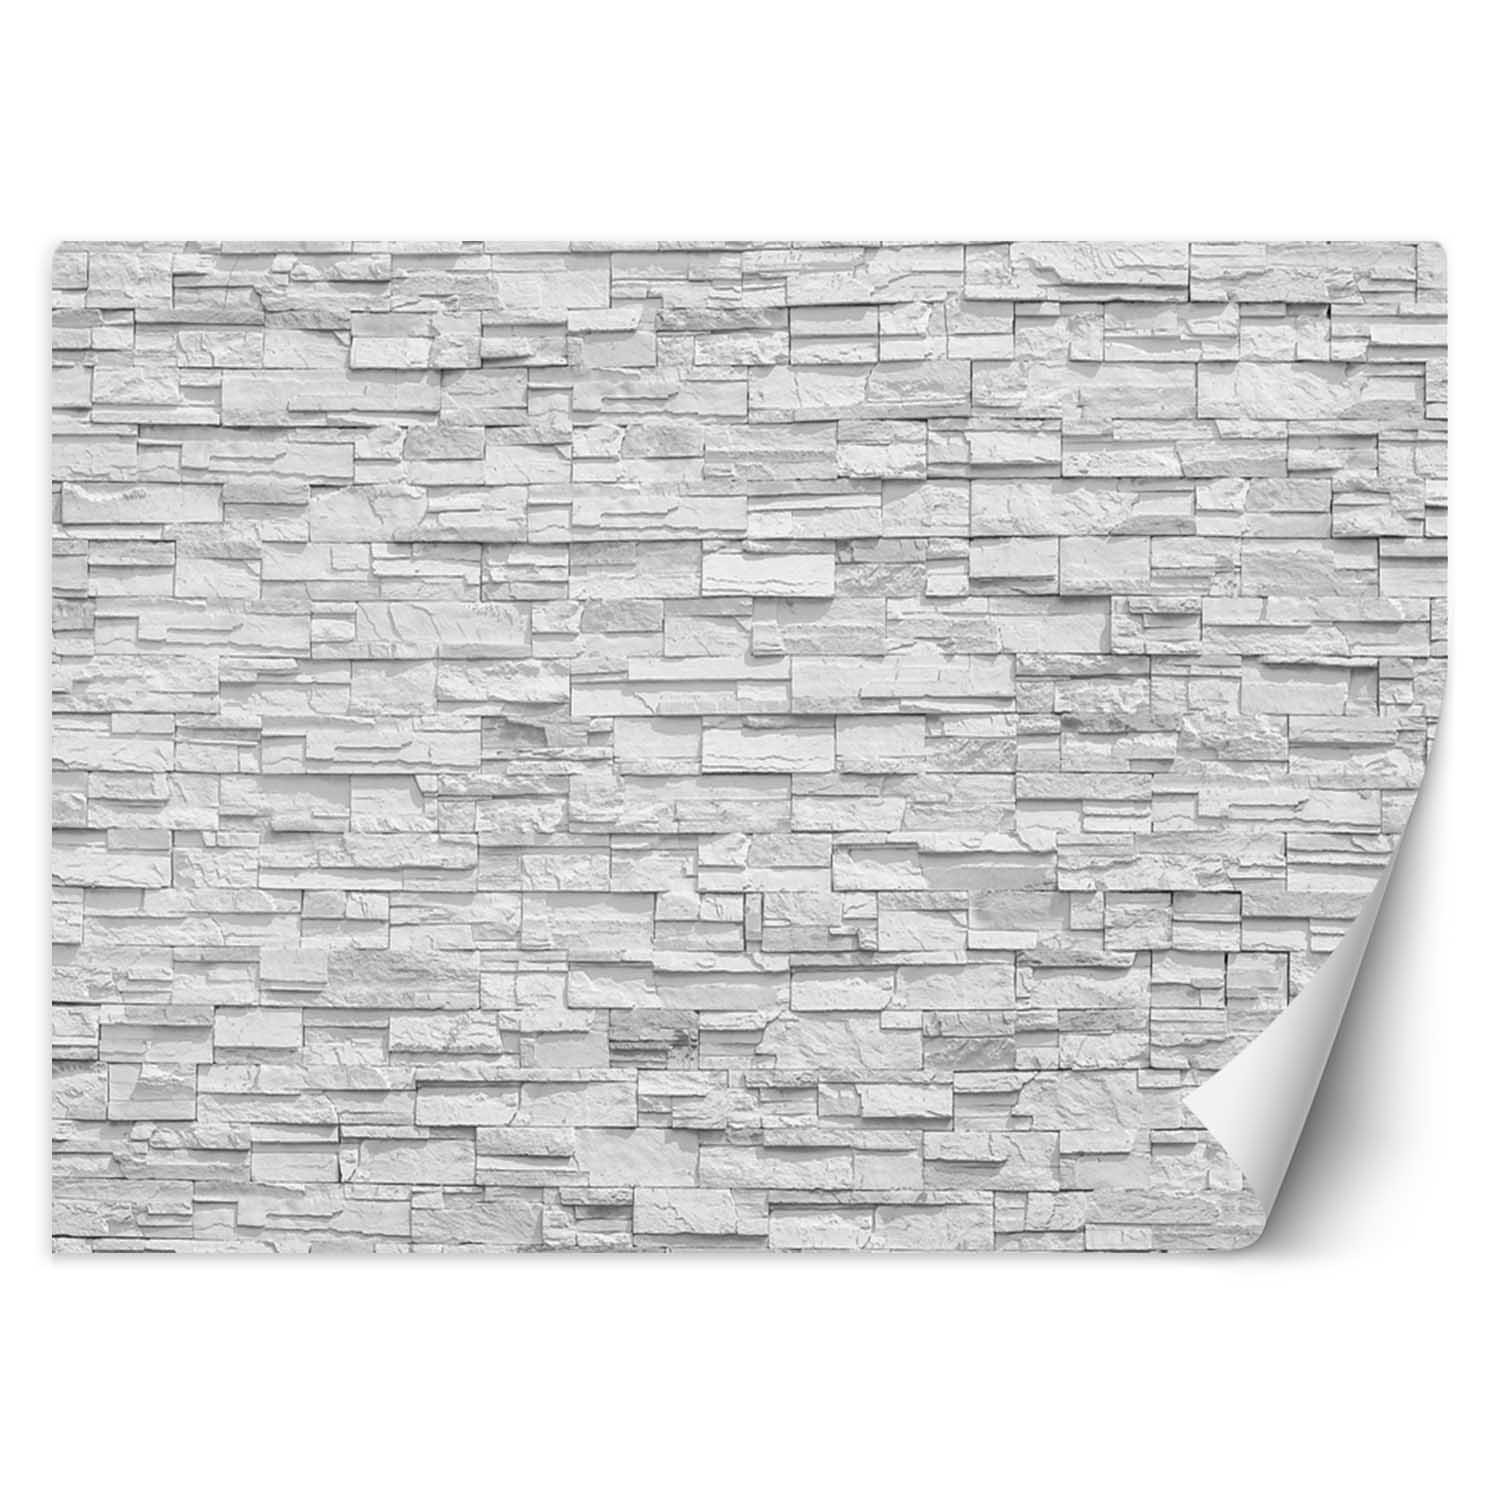 Trend24 – Behang – Witte Stenen Muur – Behangpapier – Behang Woonkamer – Fotobehang – 200x140x2 cm – Incl. behanglijm